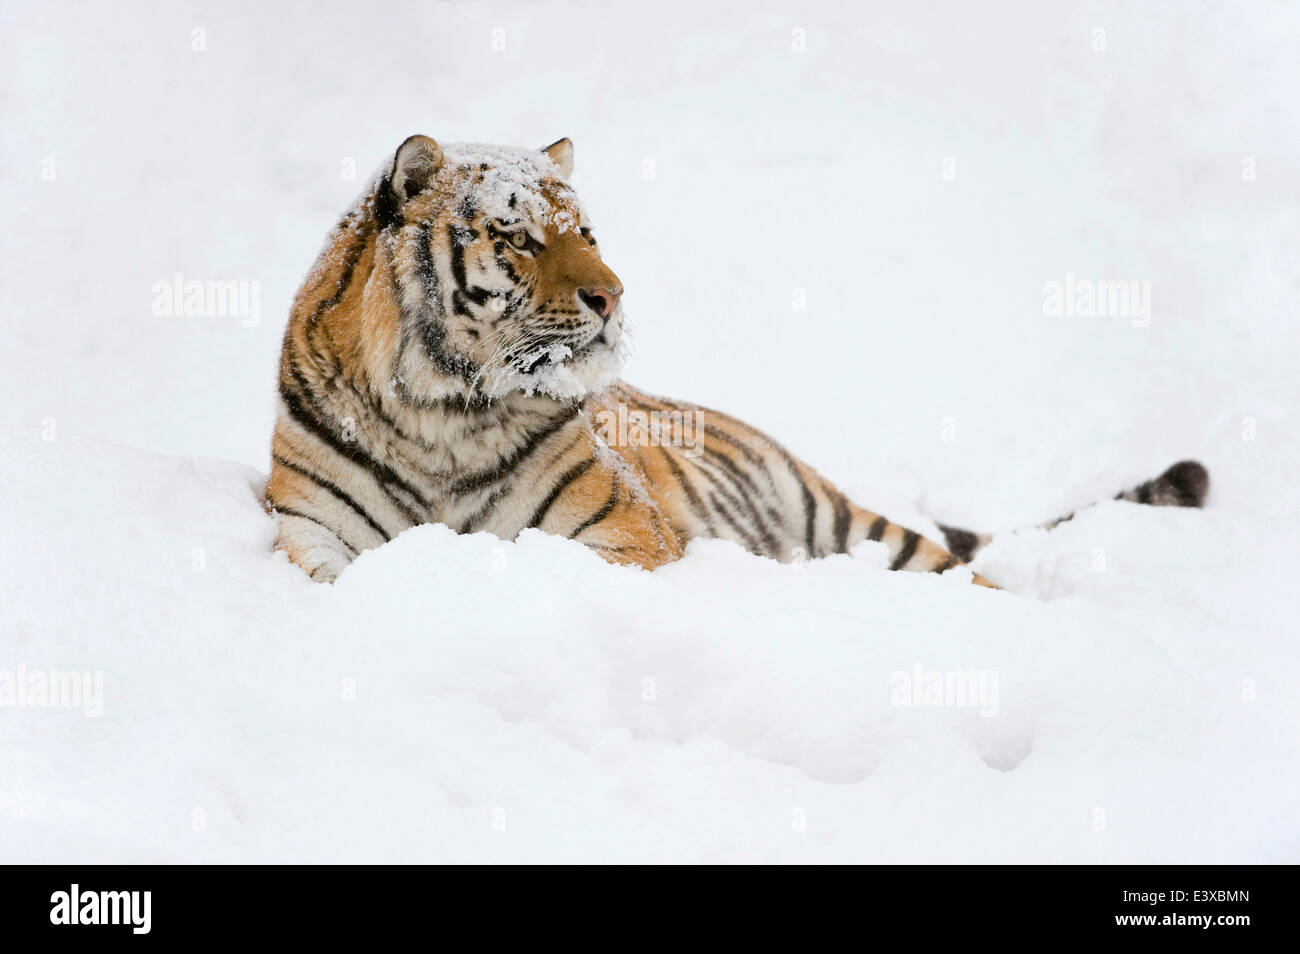 Tigre de Sibérie ou tigre de l'amour (Panthera tigris altaica), couché dans la neige, captive, Saxe, Allemagne Banque D'Images